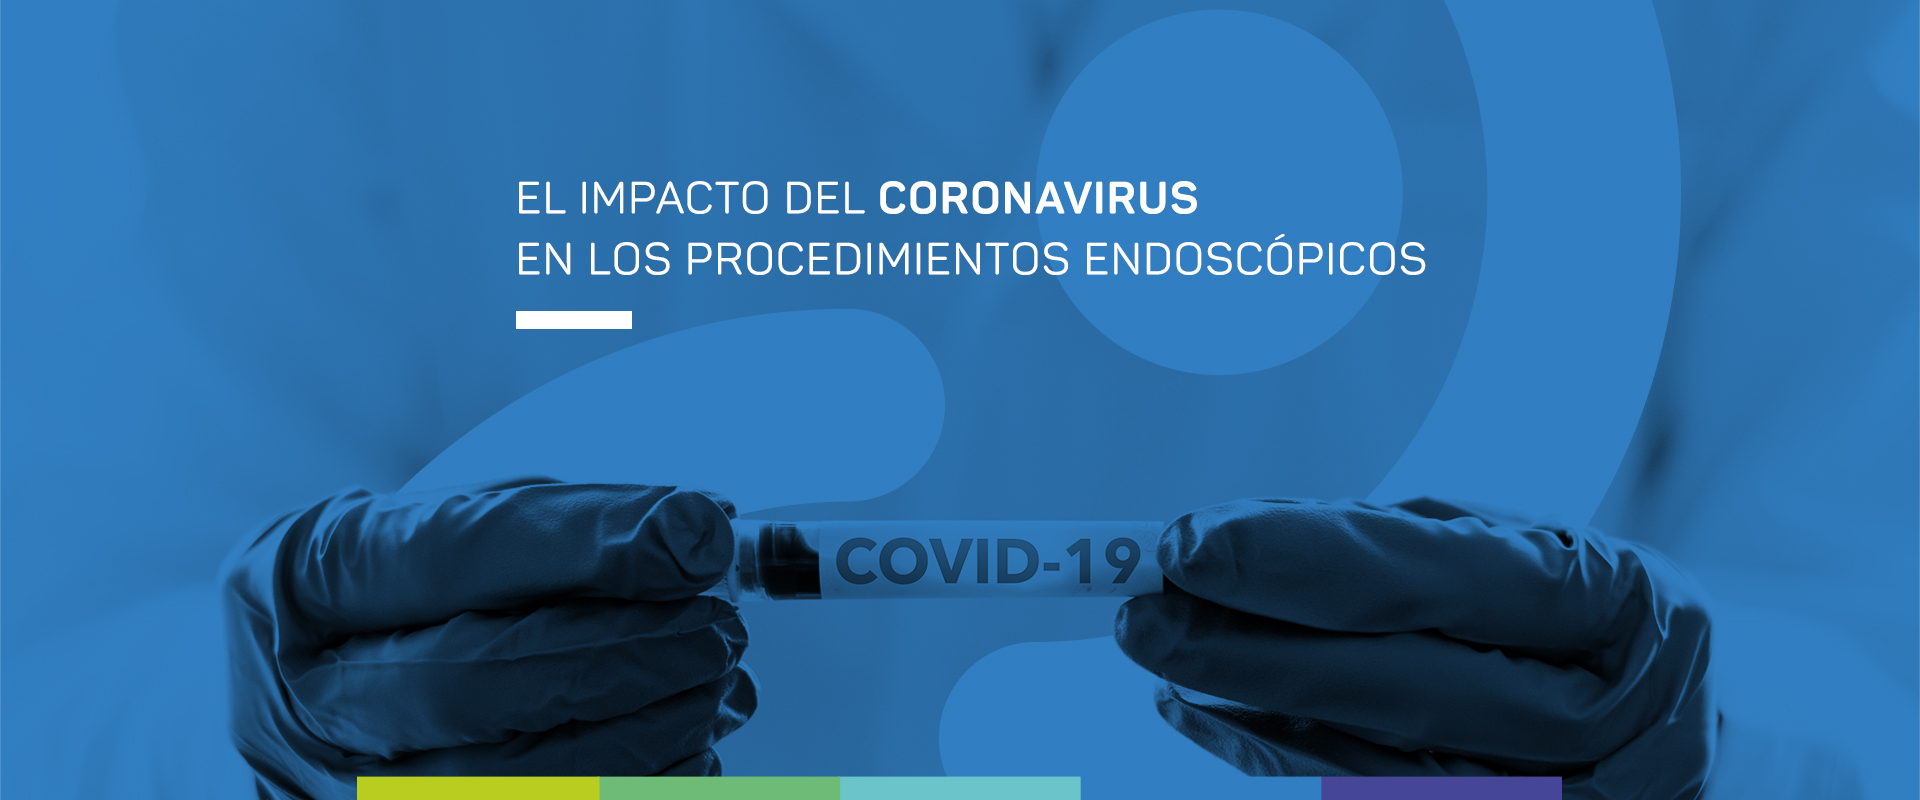 Covid19 y procedimientos endoscópicos